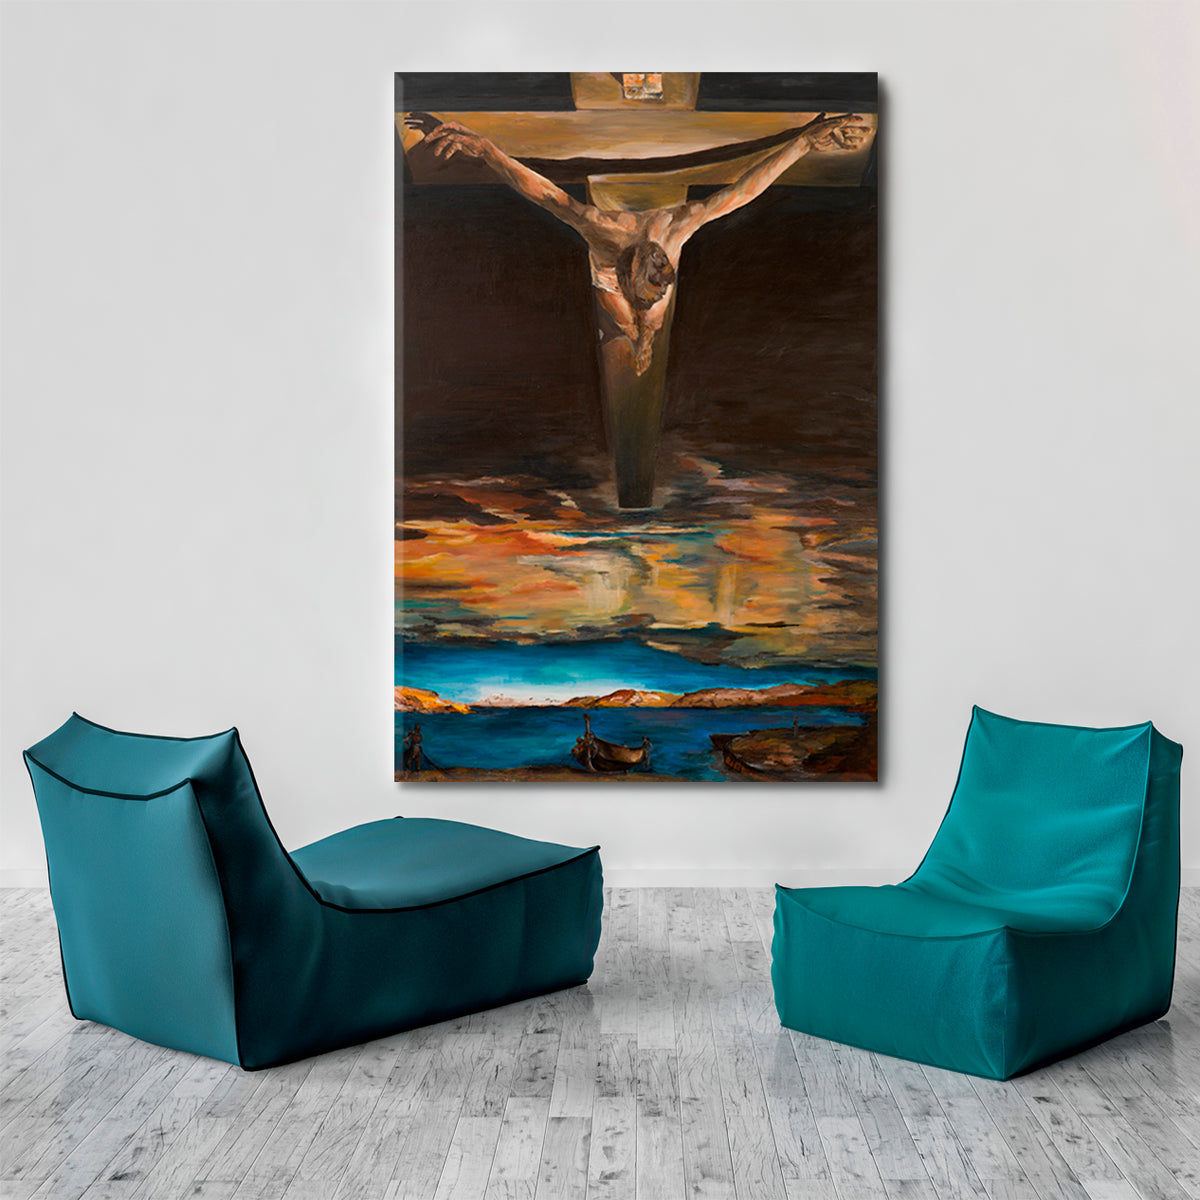 Jesus Christ Saint John of the Cross Inspired By Dali Religious Modern Art Artesty 1 Panel 16"x24" 